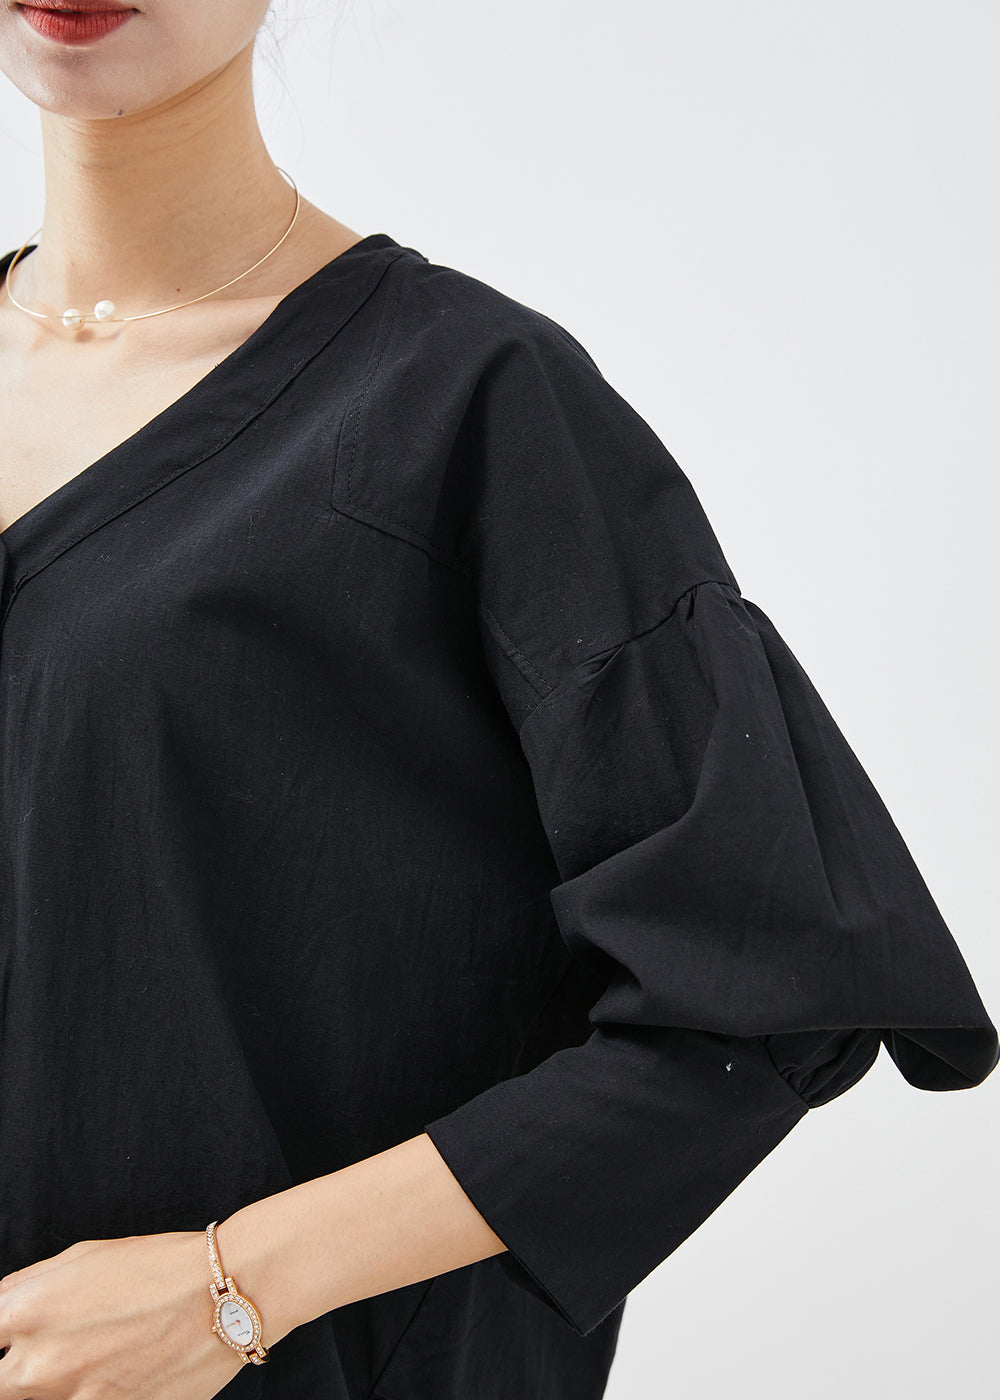 Unique Black Heart Neck Low High Design Cotton Shirt Top Fall